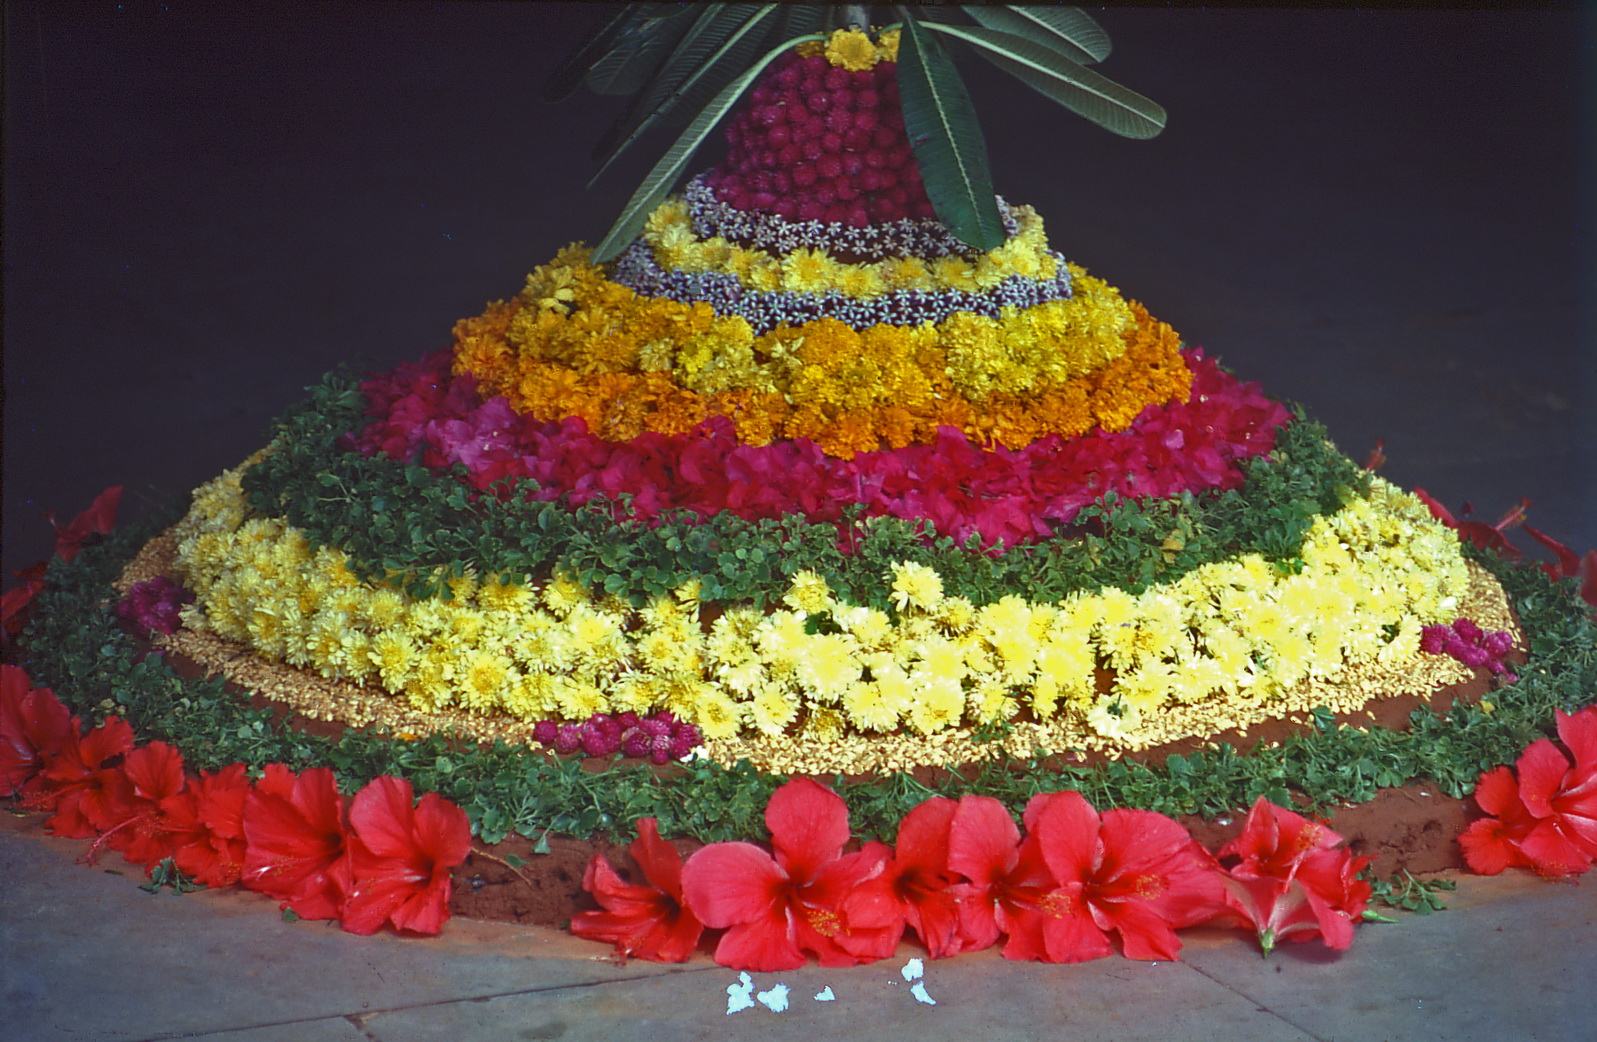 Des tapis de fleurs pour célébrer Onam — partie 1